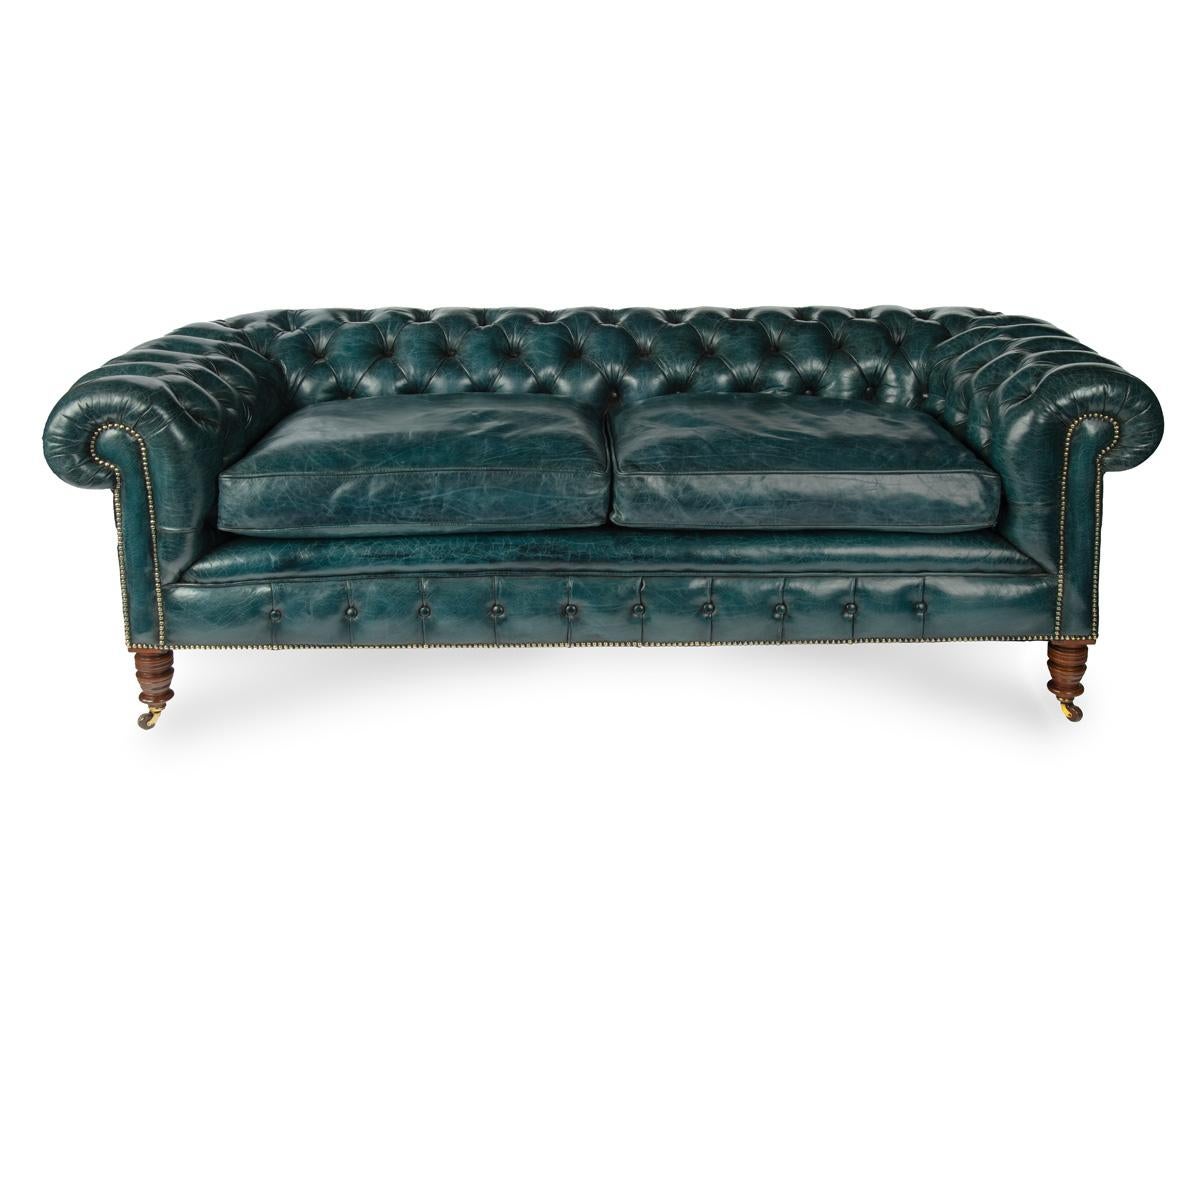 Ein spätviktorianisches zweisitziges Chesterfield-Sofa in typischer Form mit durchgehender Rückenlehne und Armlehnen, neu gepolstert mit tiefgeknöpftem blauem Leder, auf gedrechselten, spitz zulaufenden Nussbaumbeinen mit den ursprünglichen Rollen. 